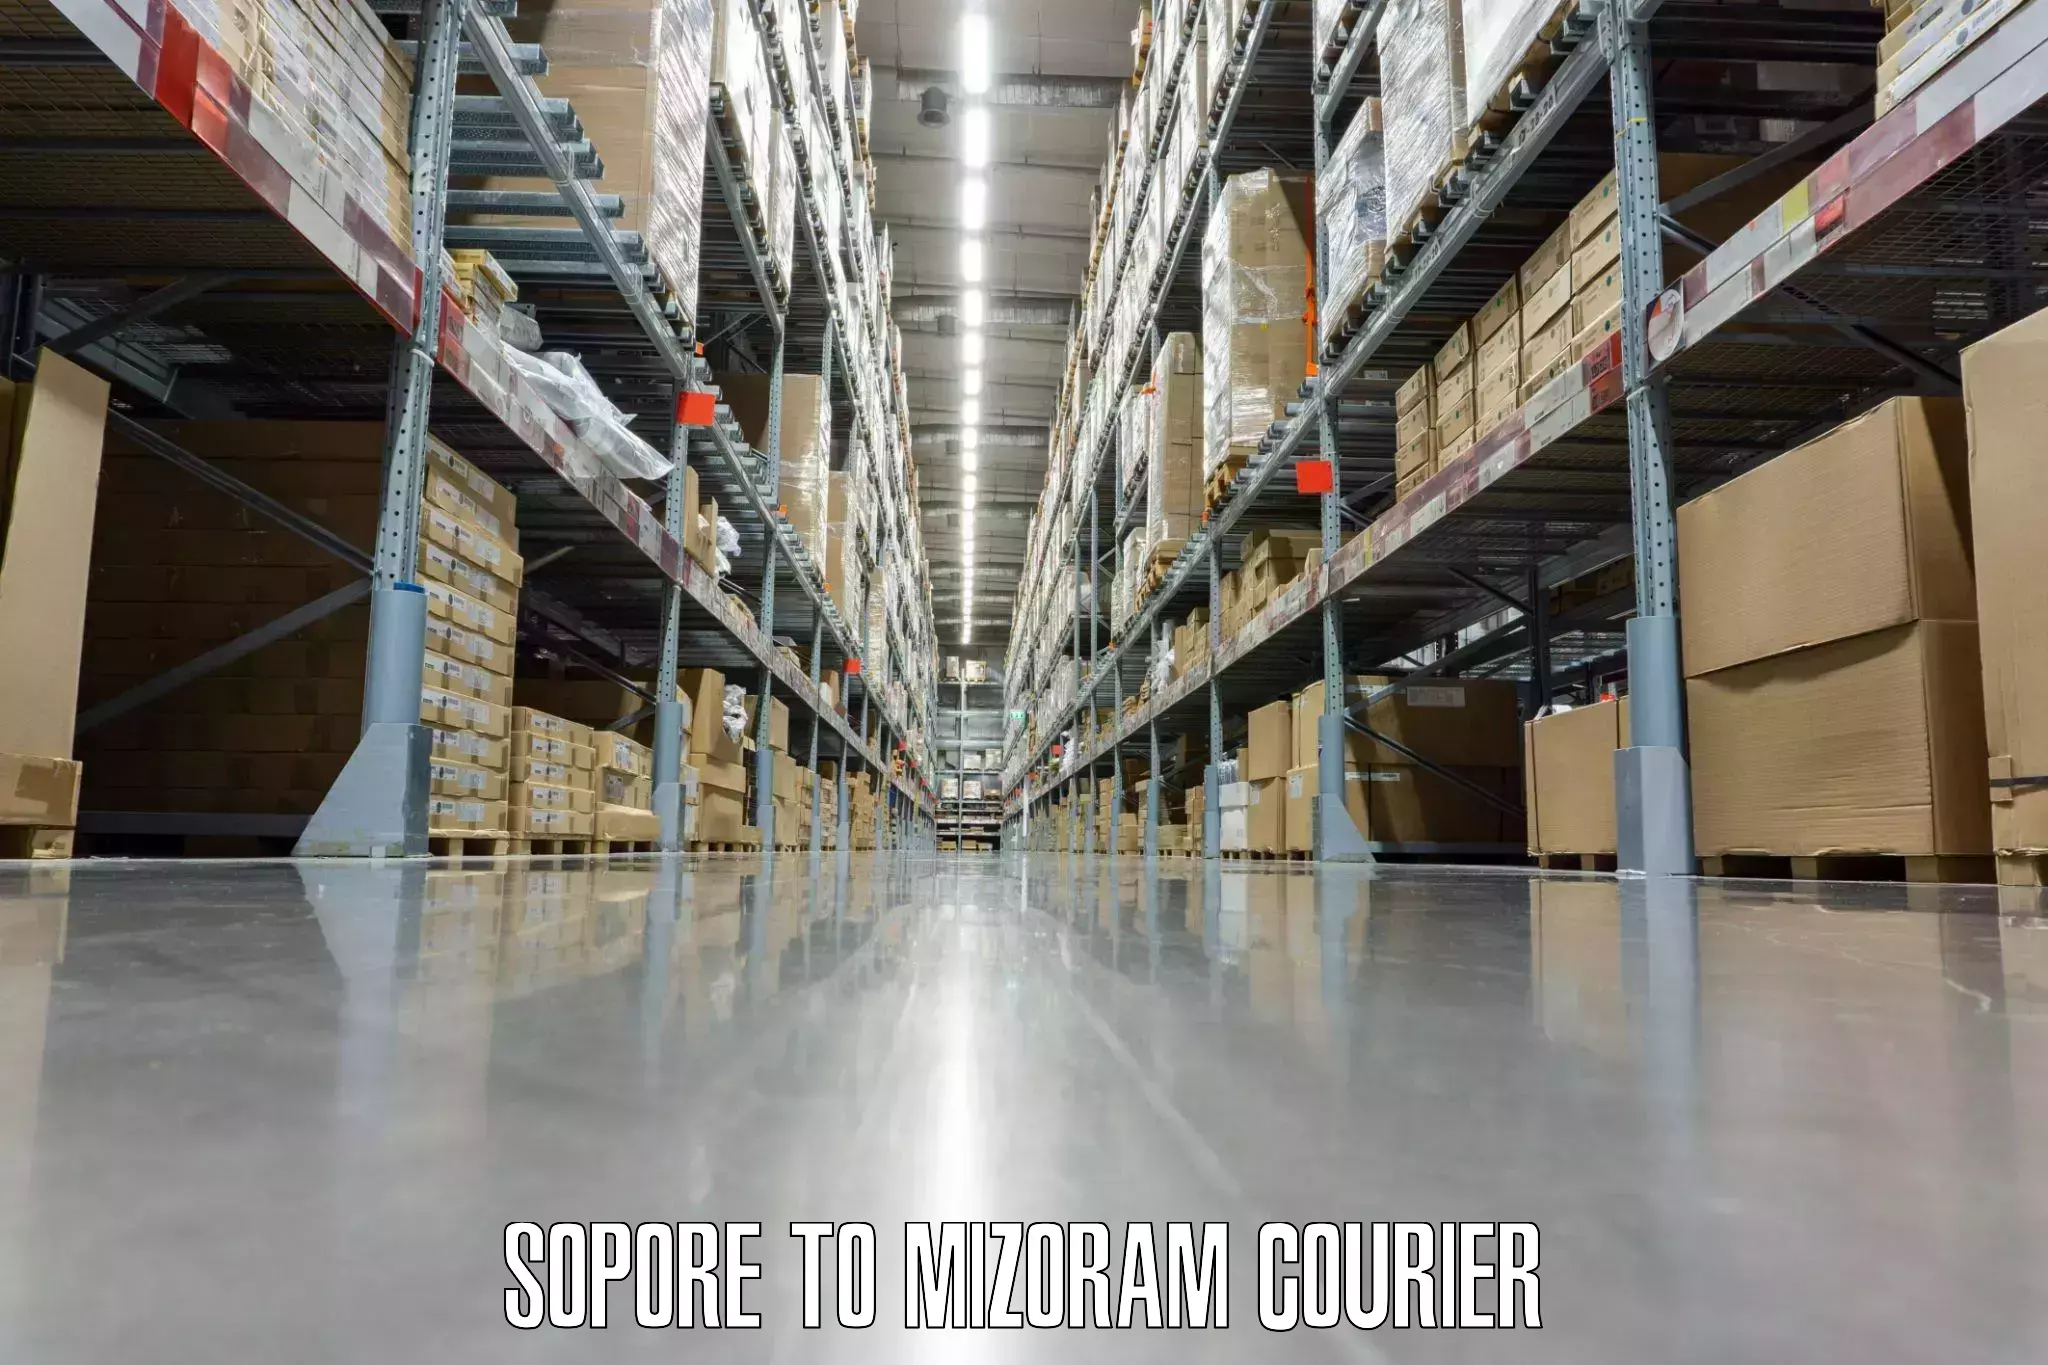 Luggage delivery app Sopore to Mizoram